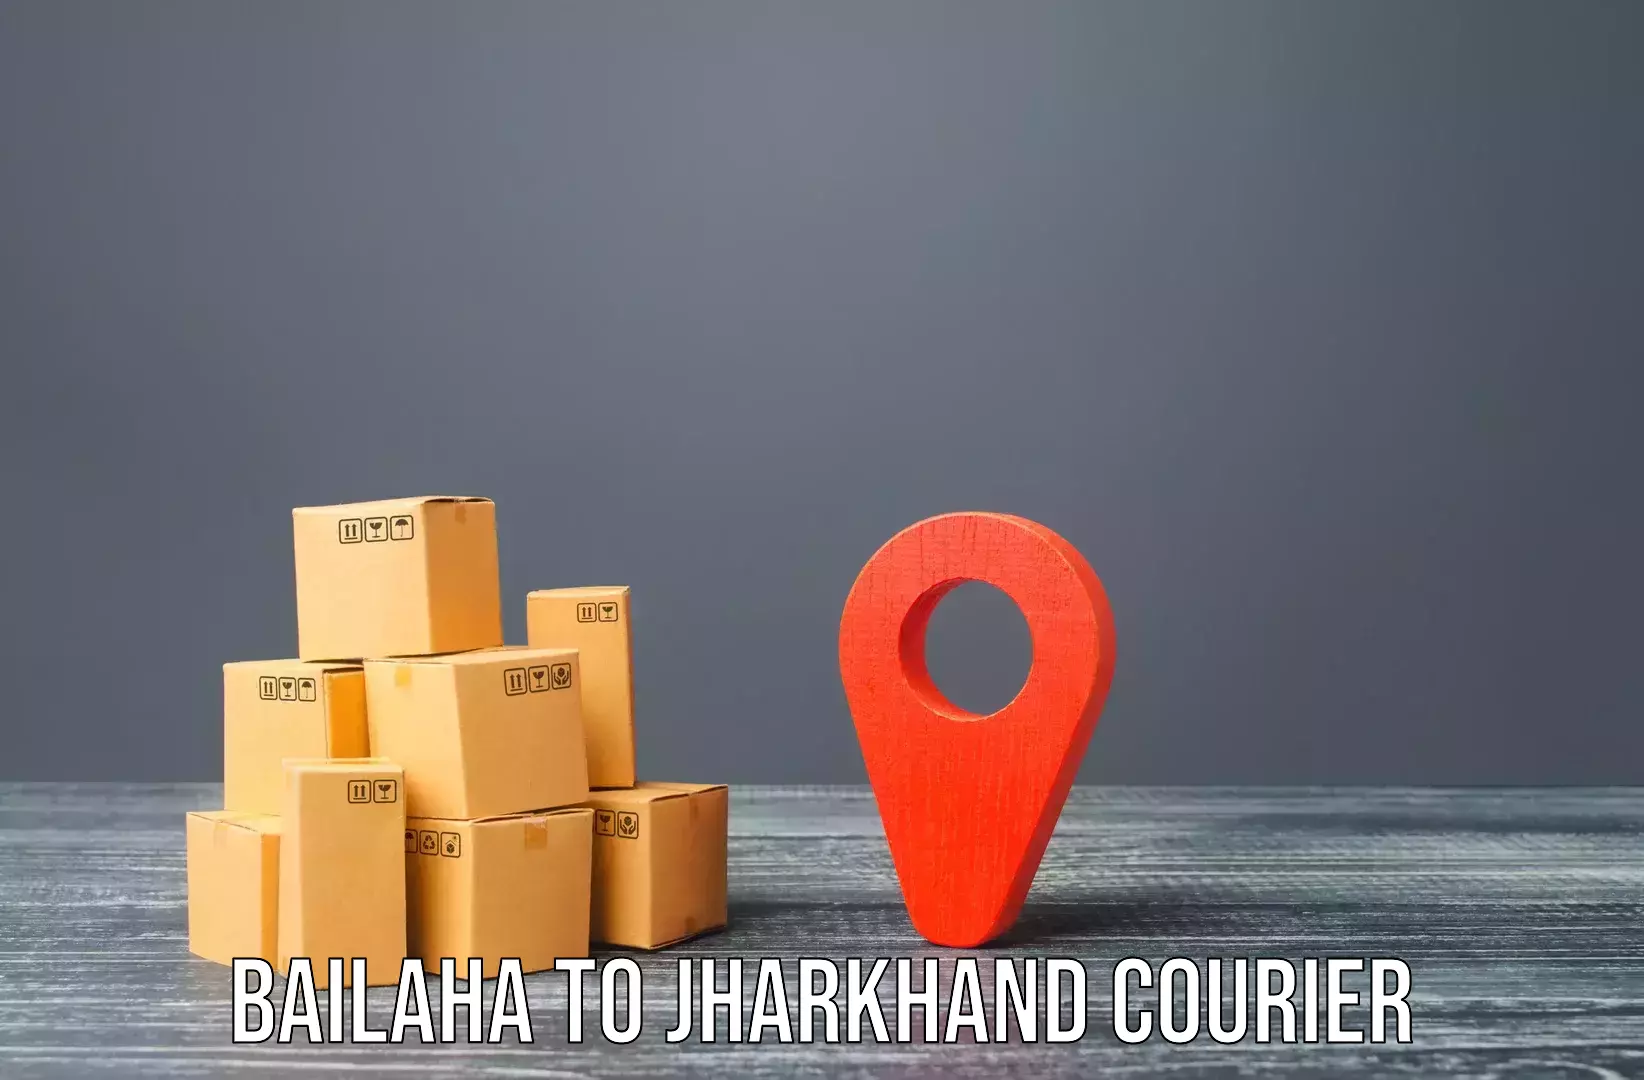 Home shifting experts Bailaha to Jharkhand